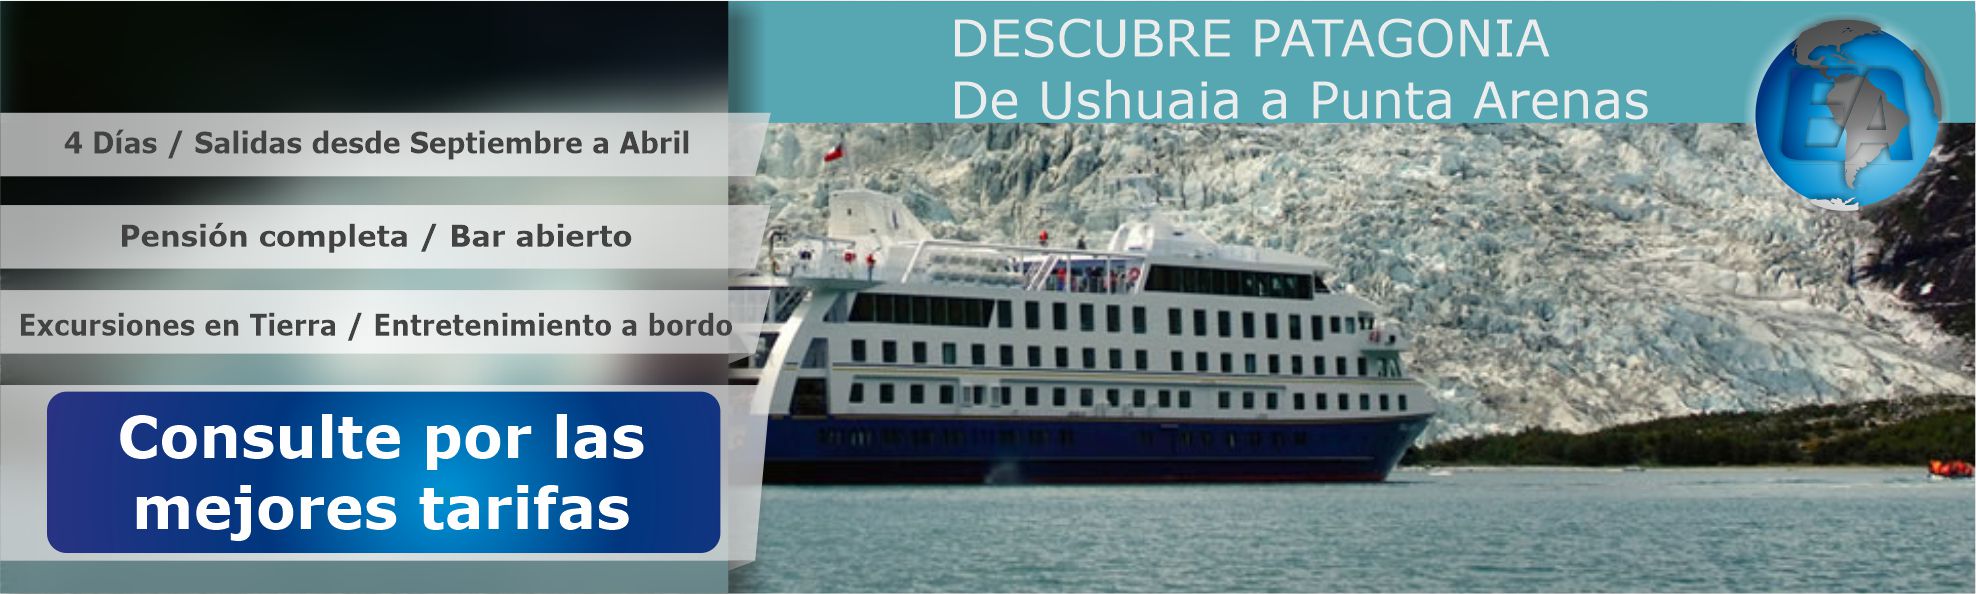 Descubre Patagonia De Ushuaia a Punta Arenas